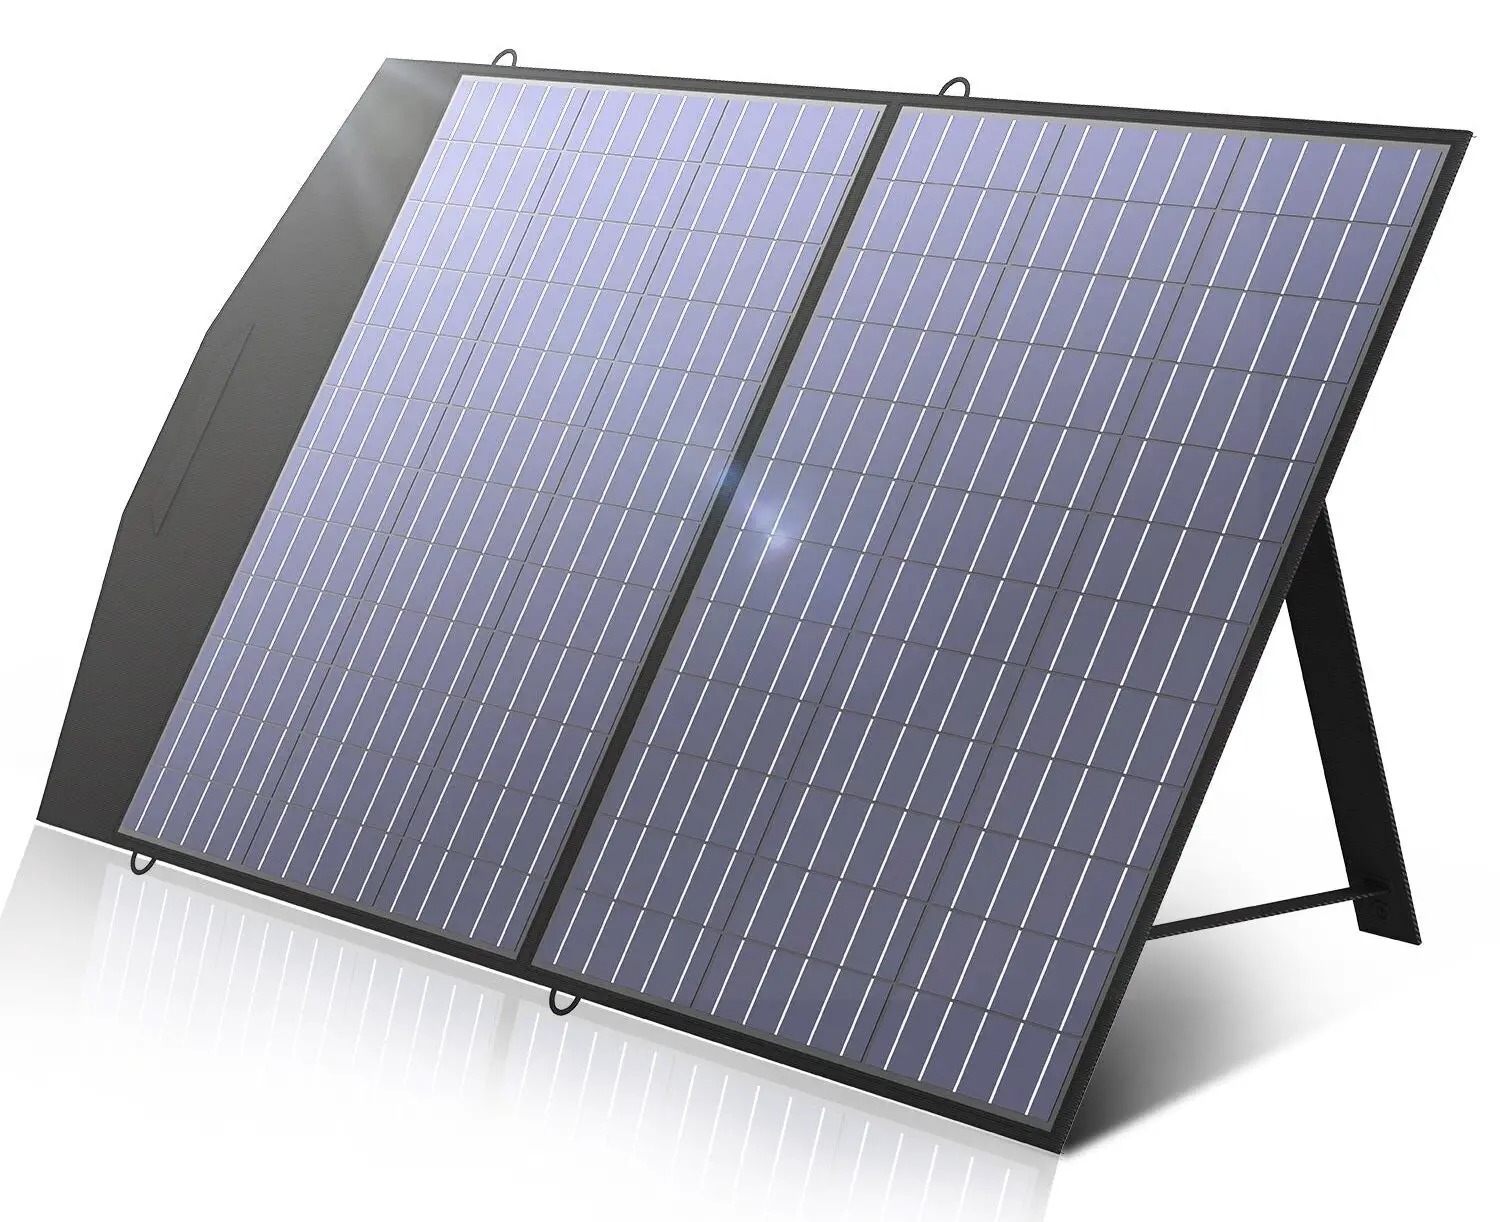 ALLPOWERS SP027 Polycrystalline Solar Panel 100W